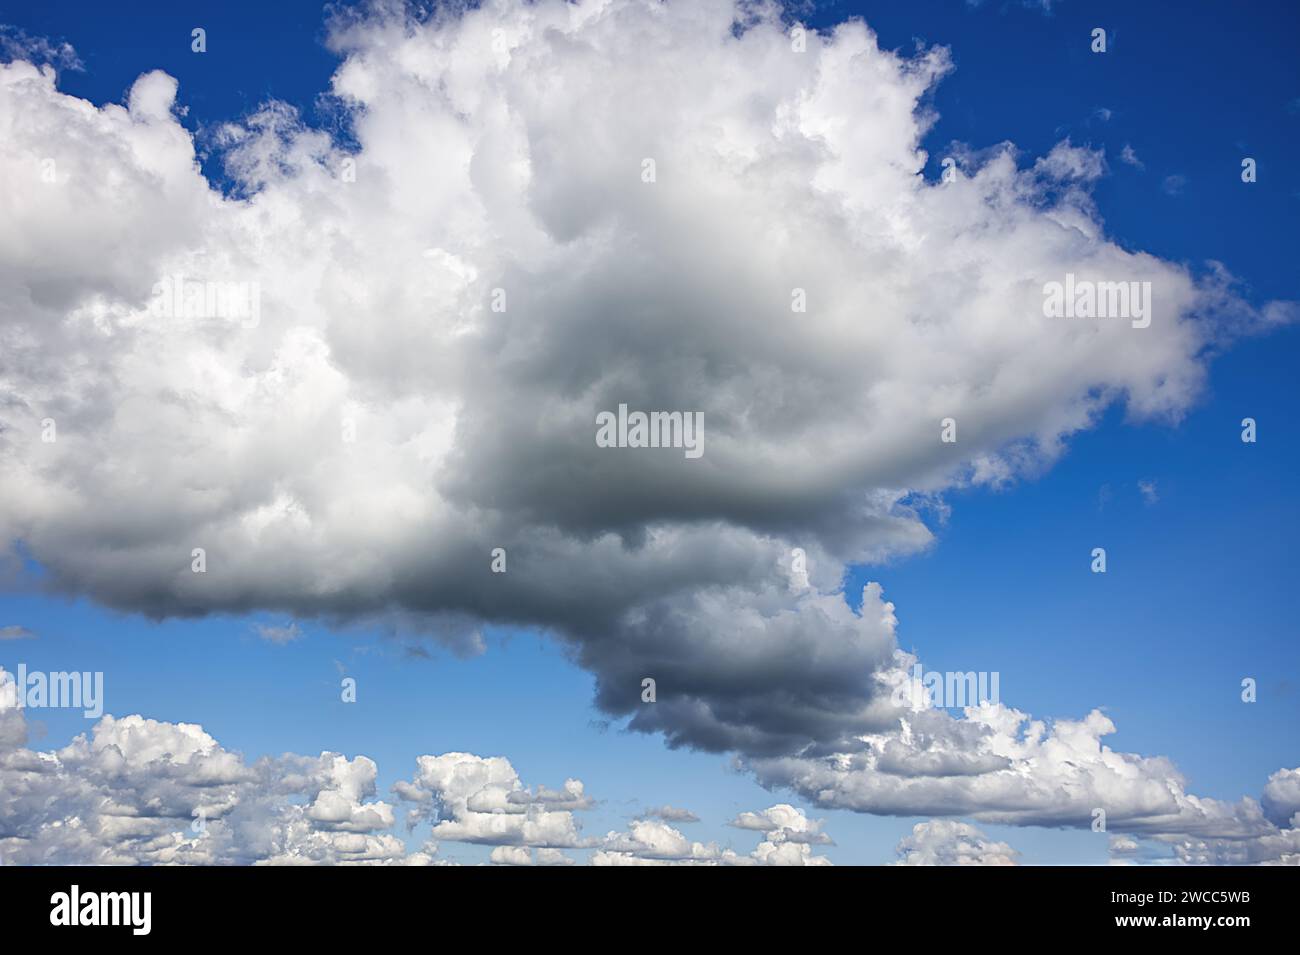 Die Kombination des intensiven blauen Himmels und der dramatischen Wolken ruft eine Reihe von Emotionen hervor Stockfoto